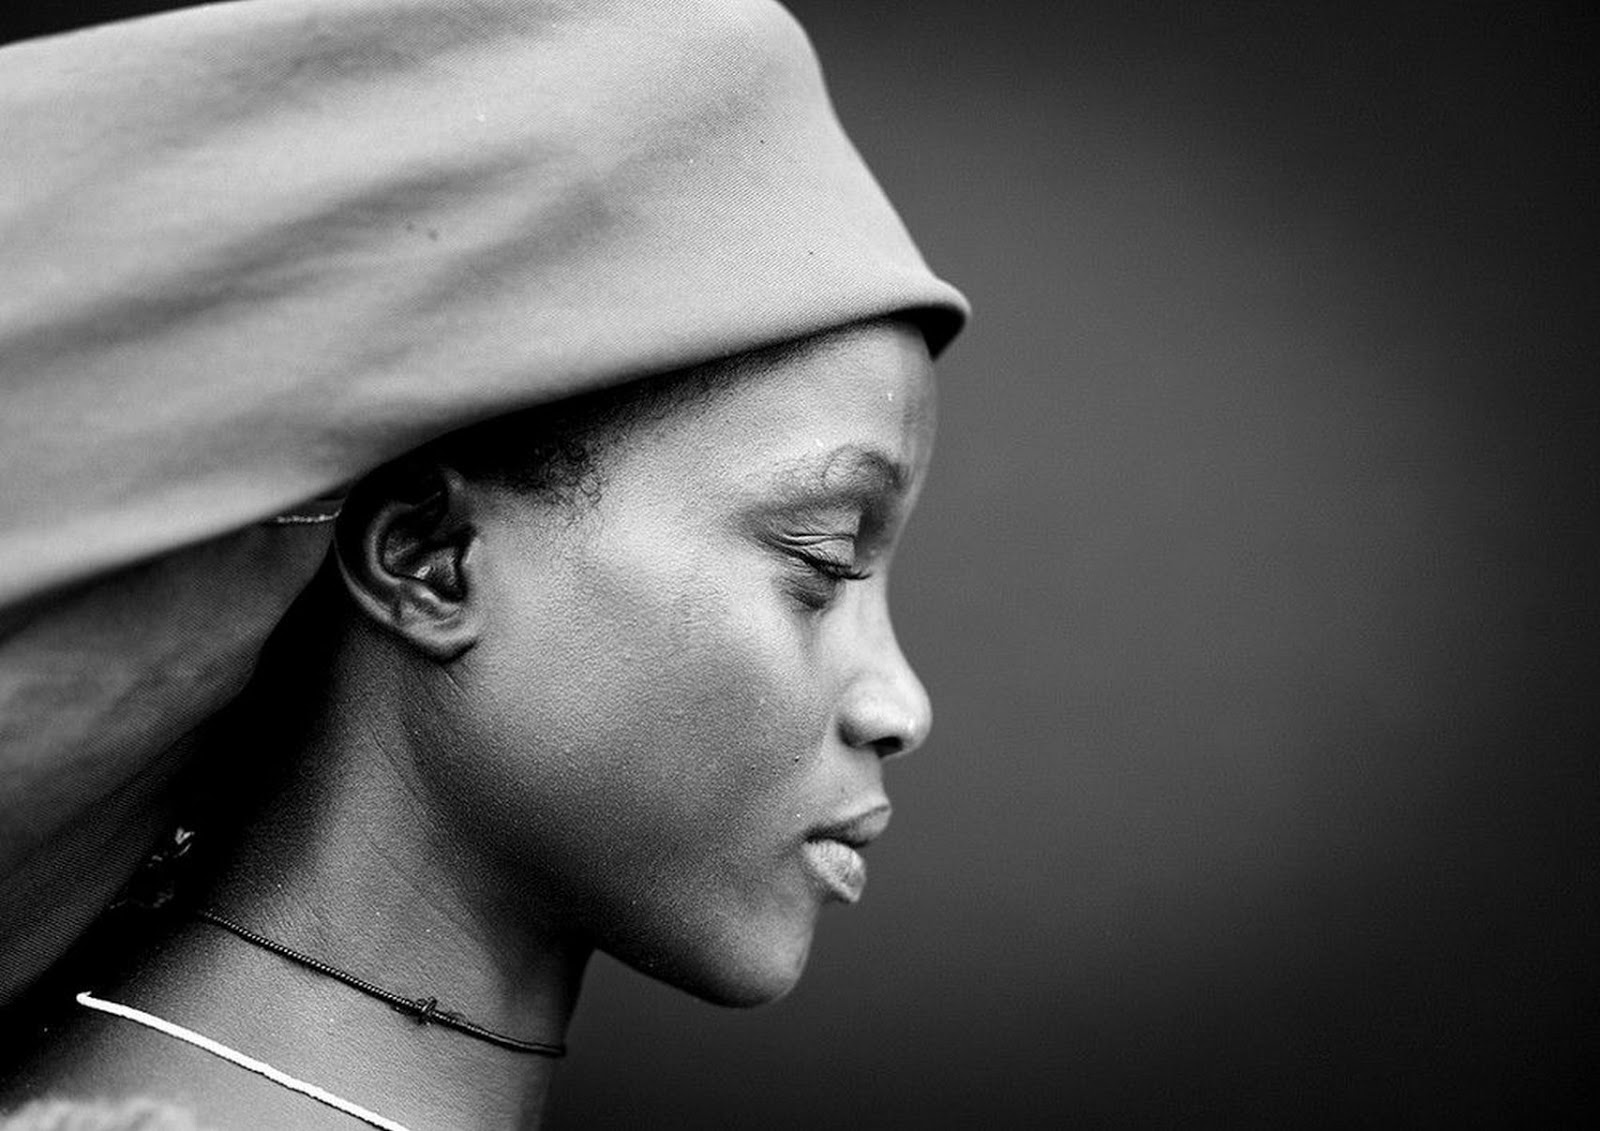 Африка белая женщина. Eric Lafforgue фотограф. Африканские женщины. Африканка в профиль. Африканская женщина в профиль.